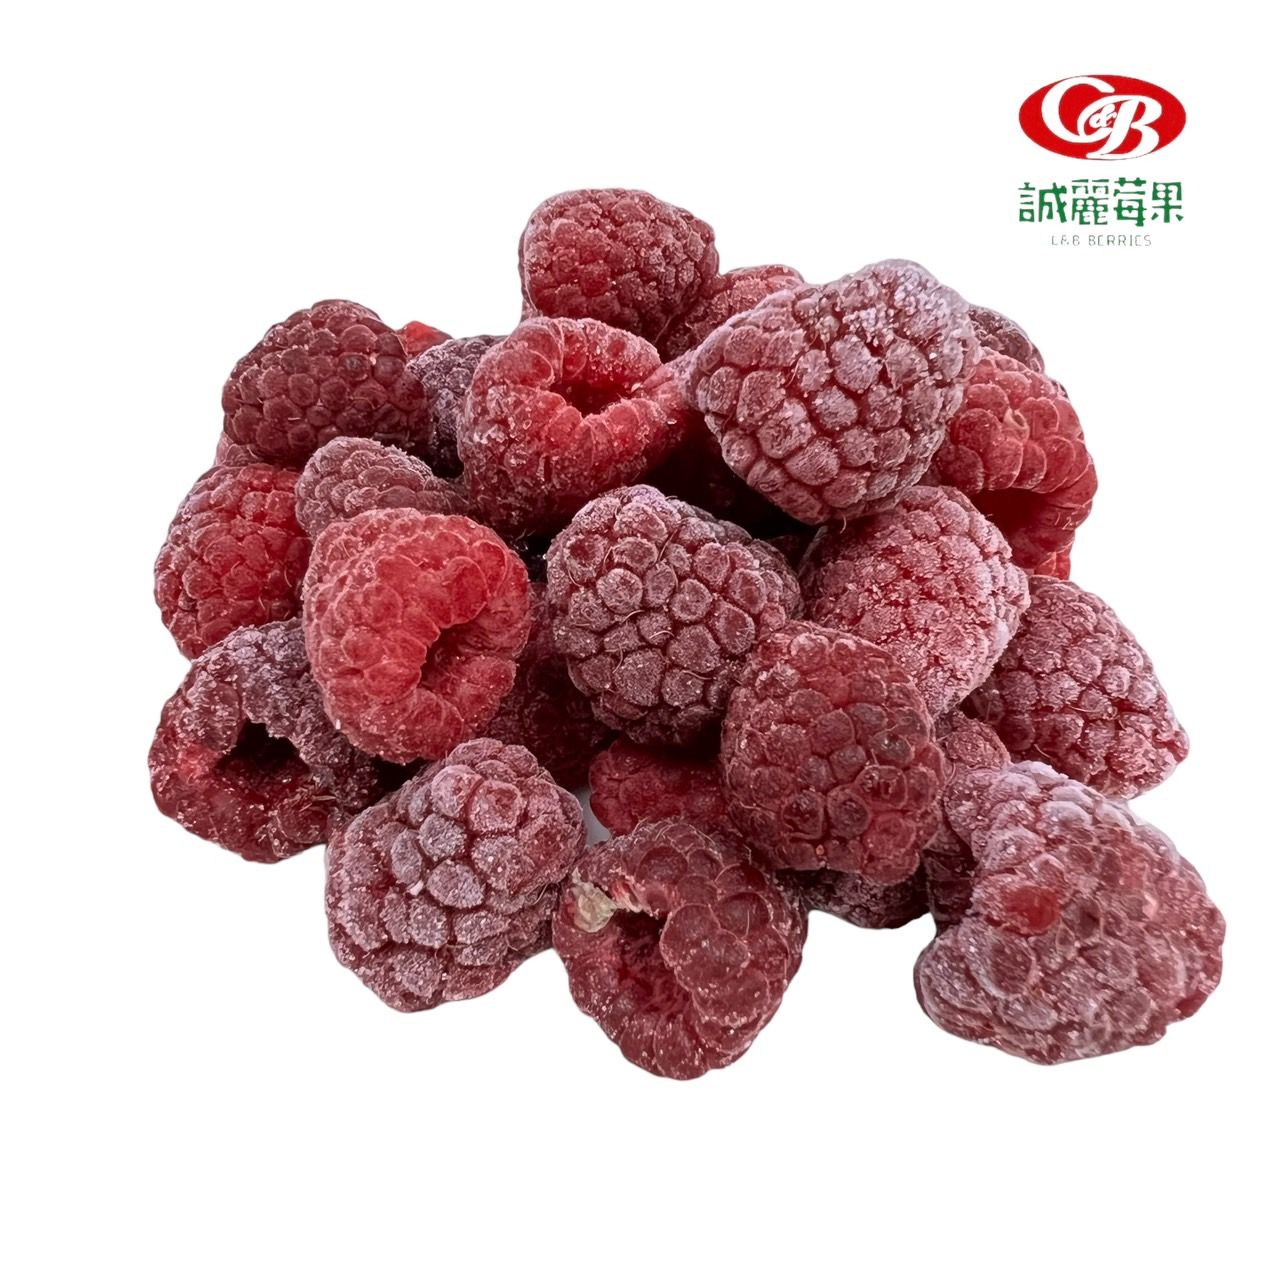 歐洲冷凍覆盆莓